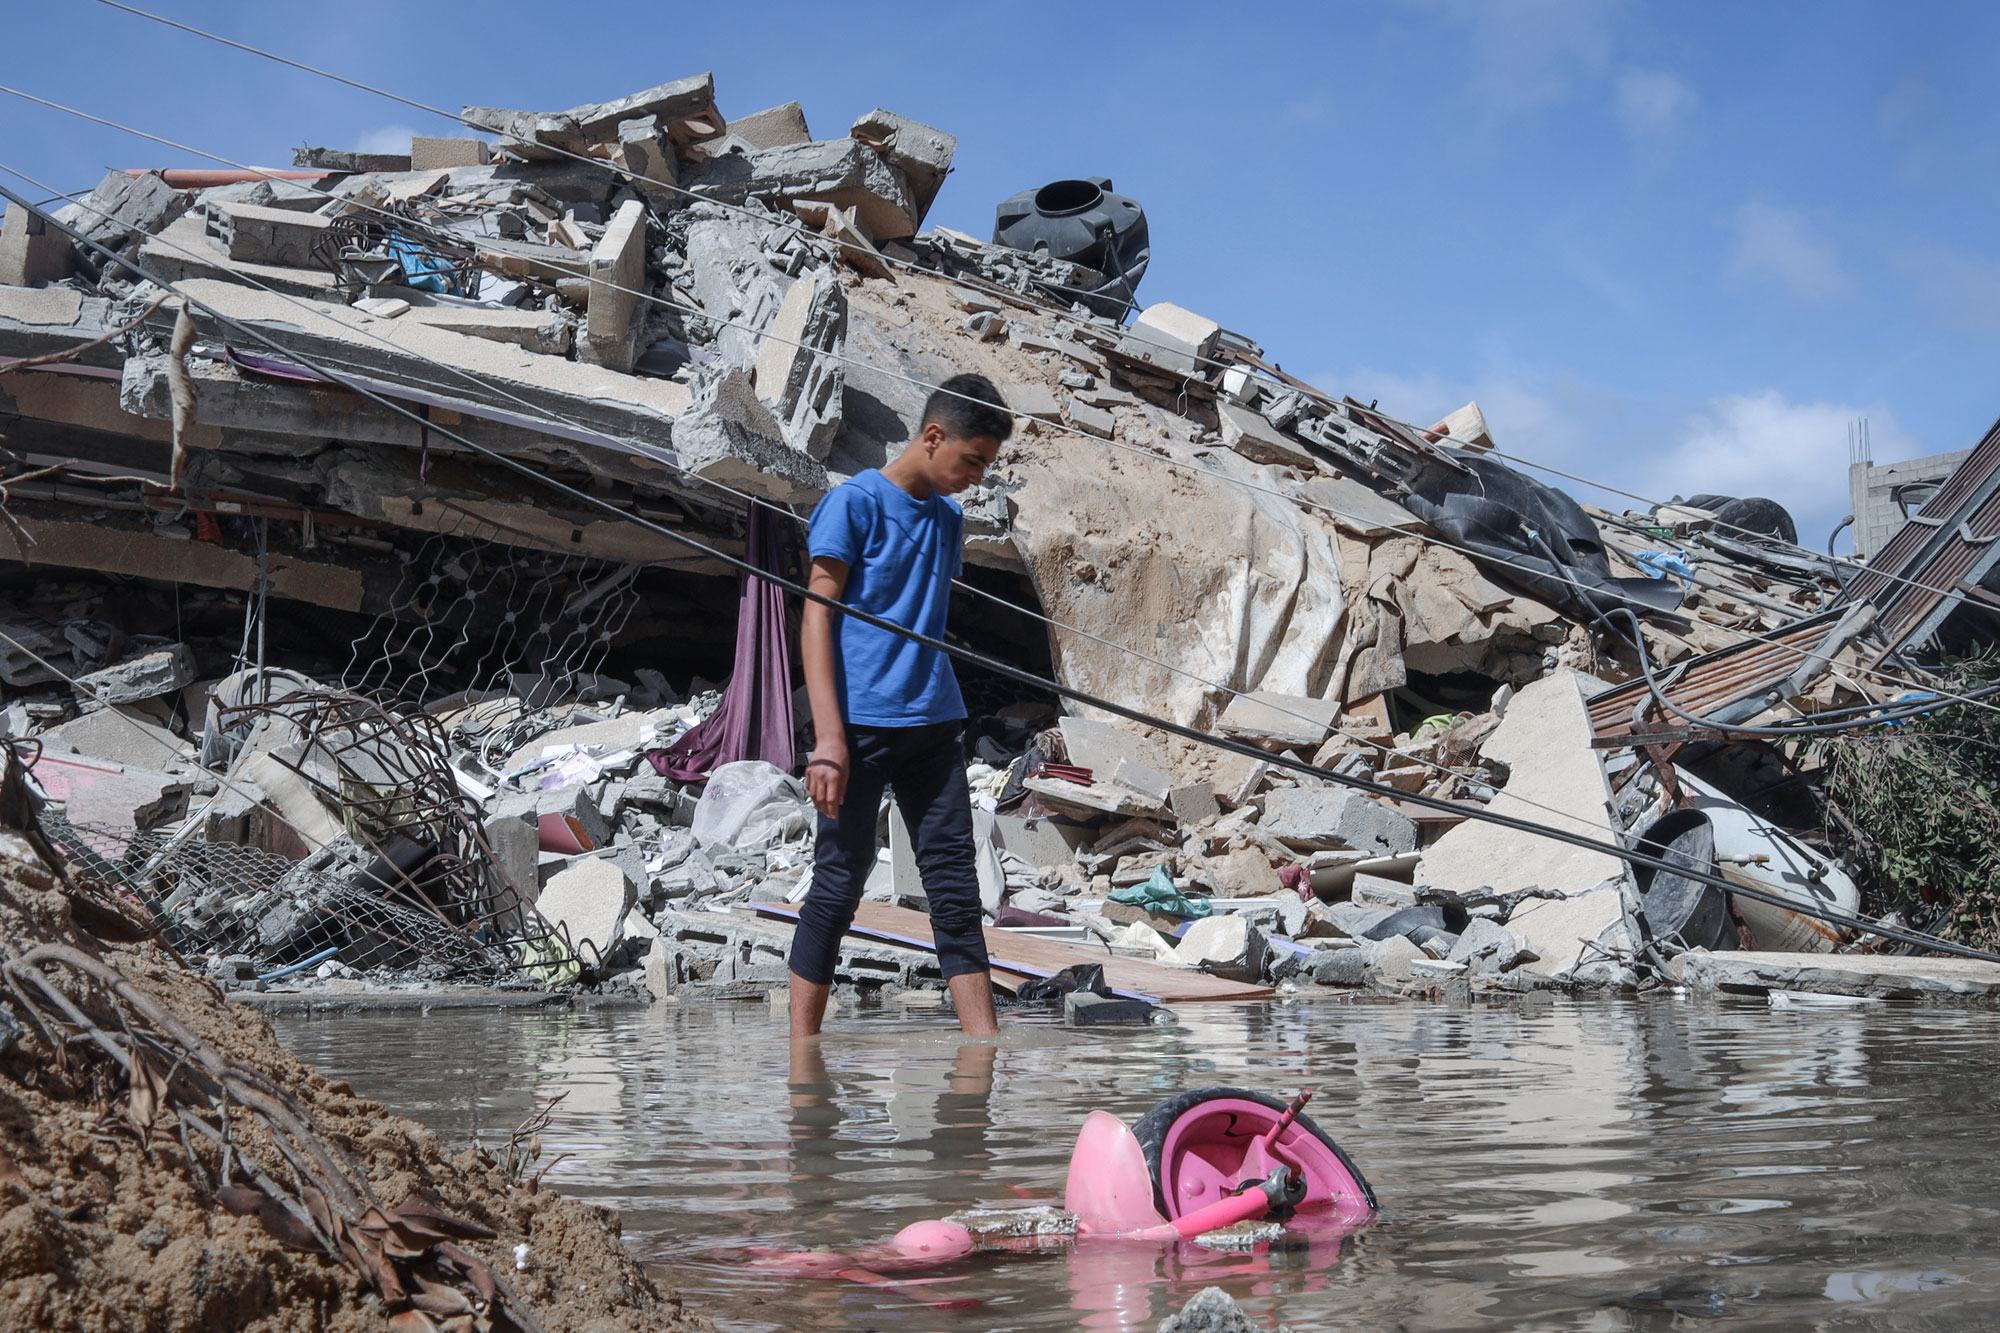 أرشيف 2021: فتى فلسطيني يتفقد منزله الذي دمرته طائرة إسرائيلية في مدينة غزة